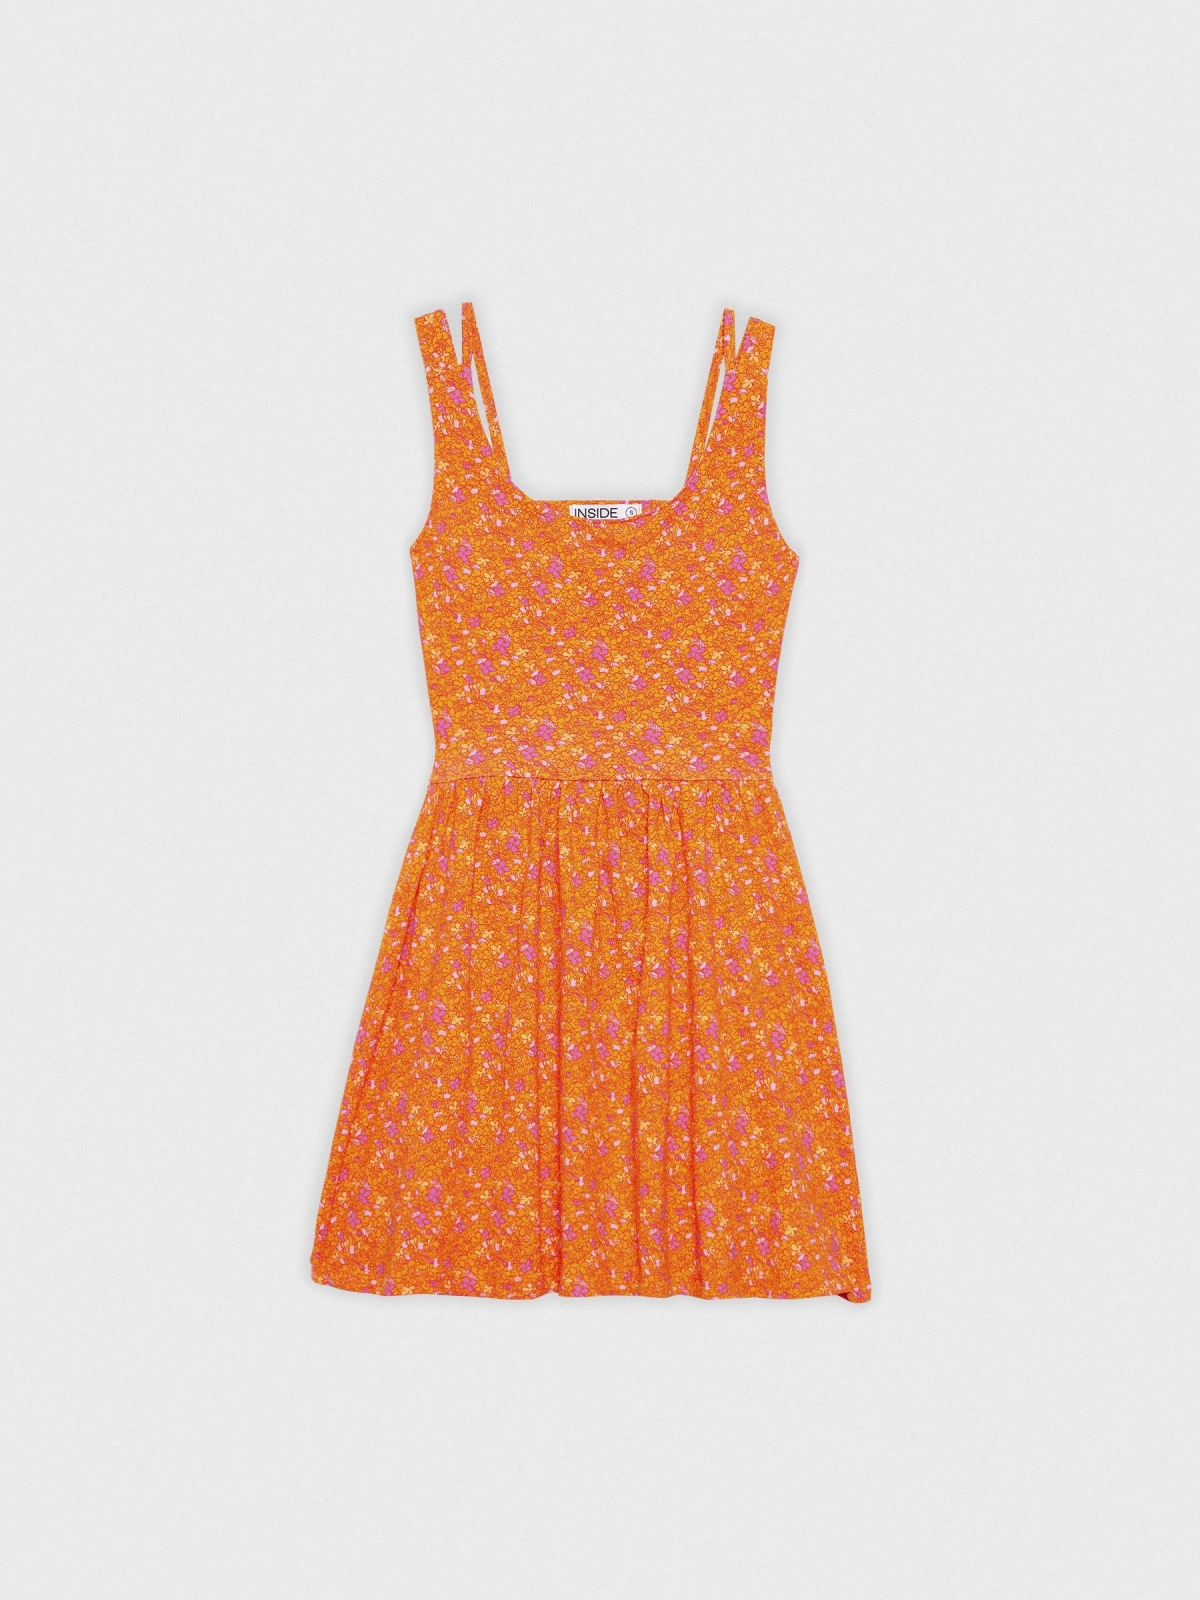  Open back mini flared dress caldera orange